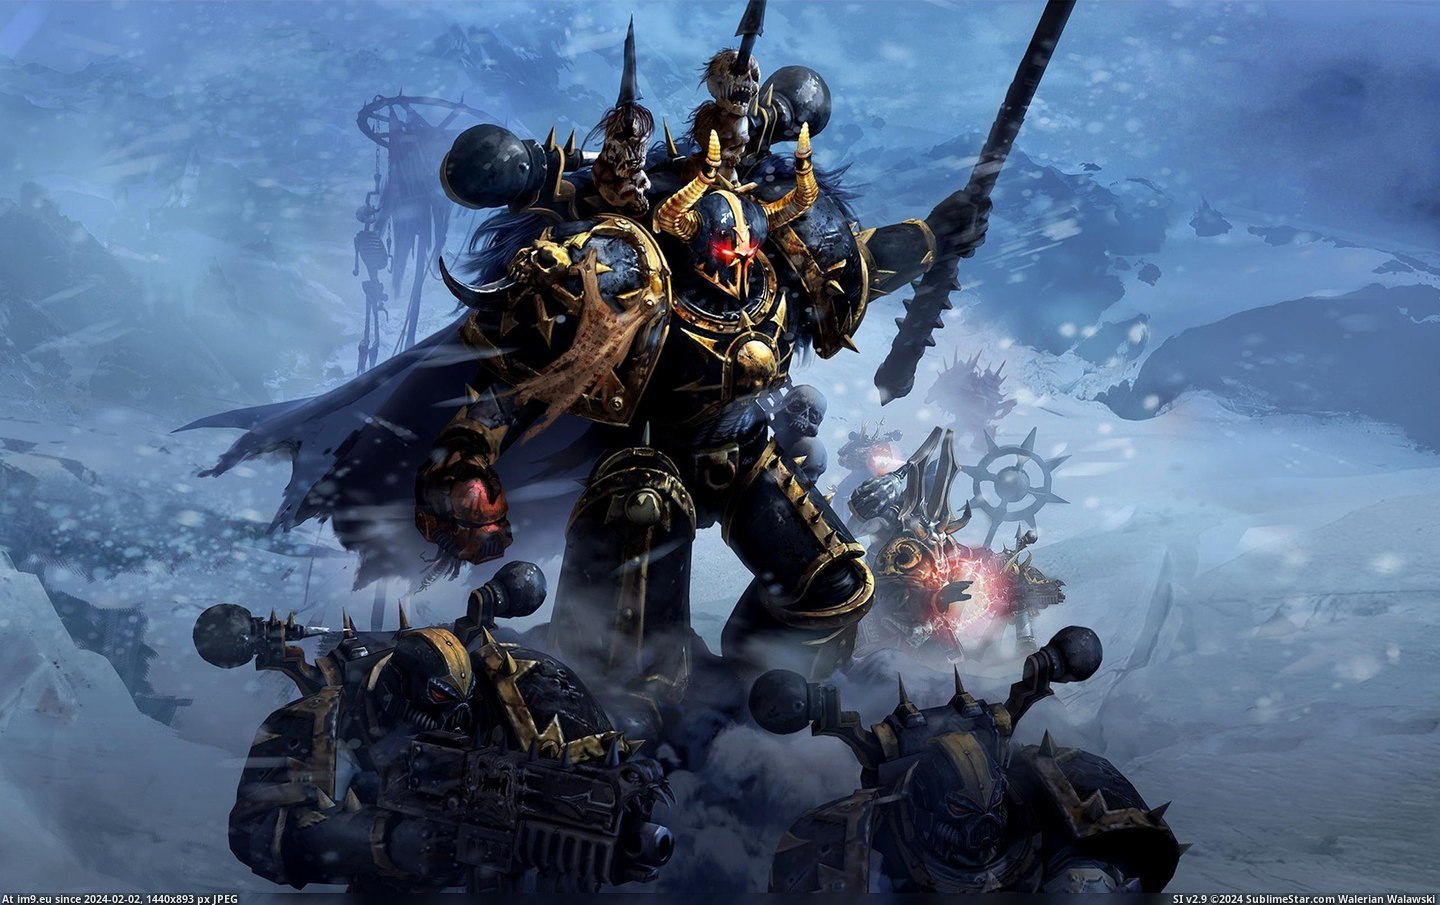 #Game #Warhammer #Video Video Game Warhammer 103324 Pic. (Bild von album Games Wallpapers))